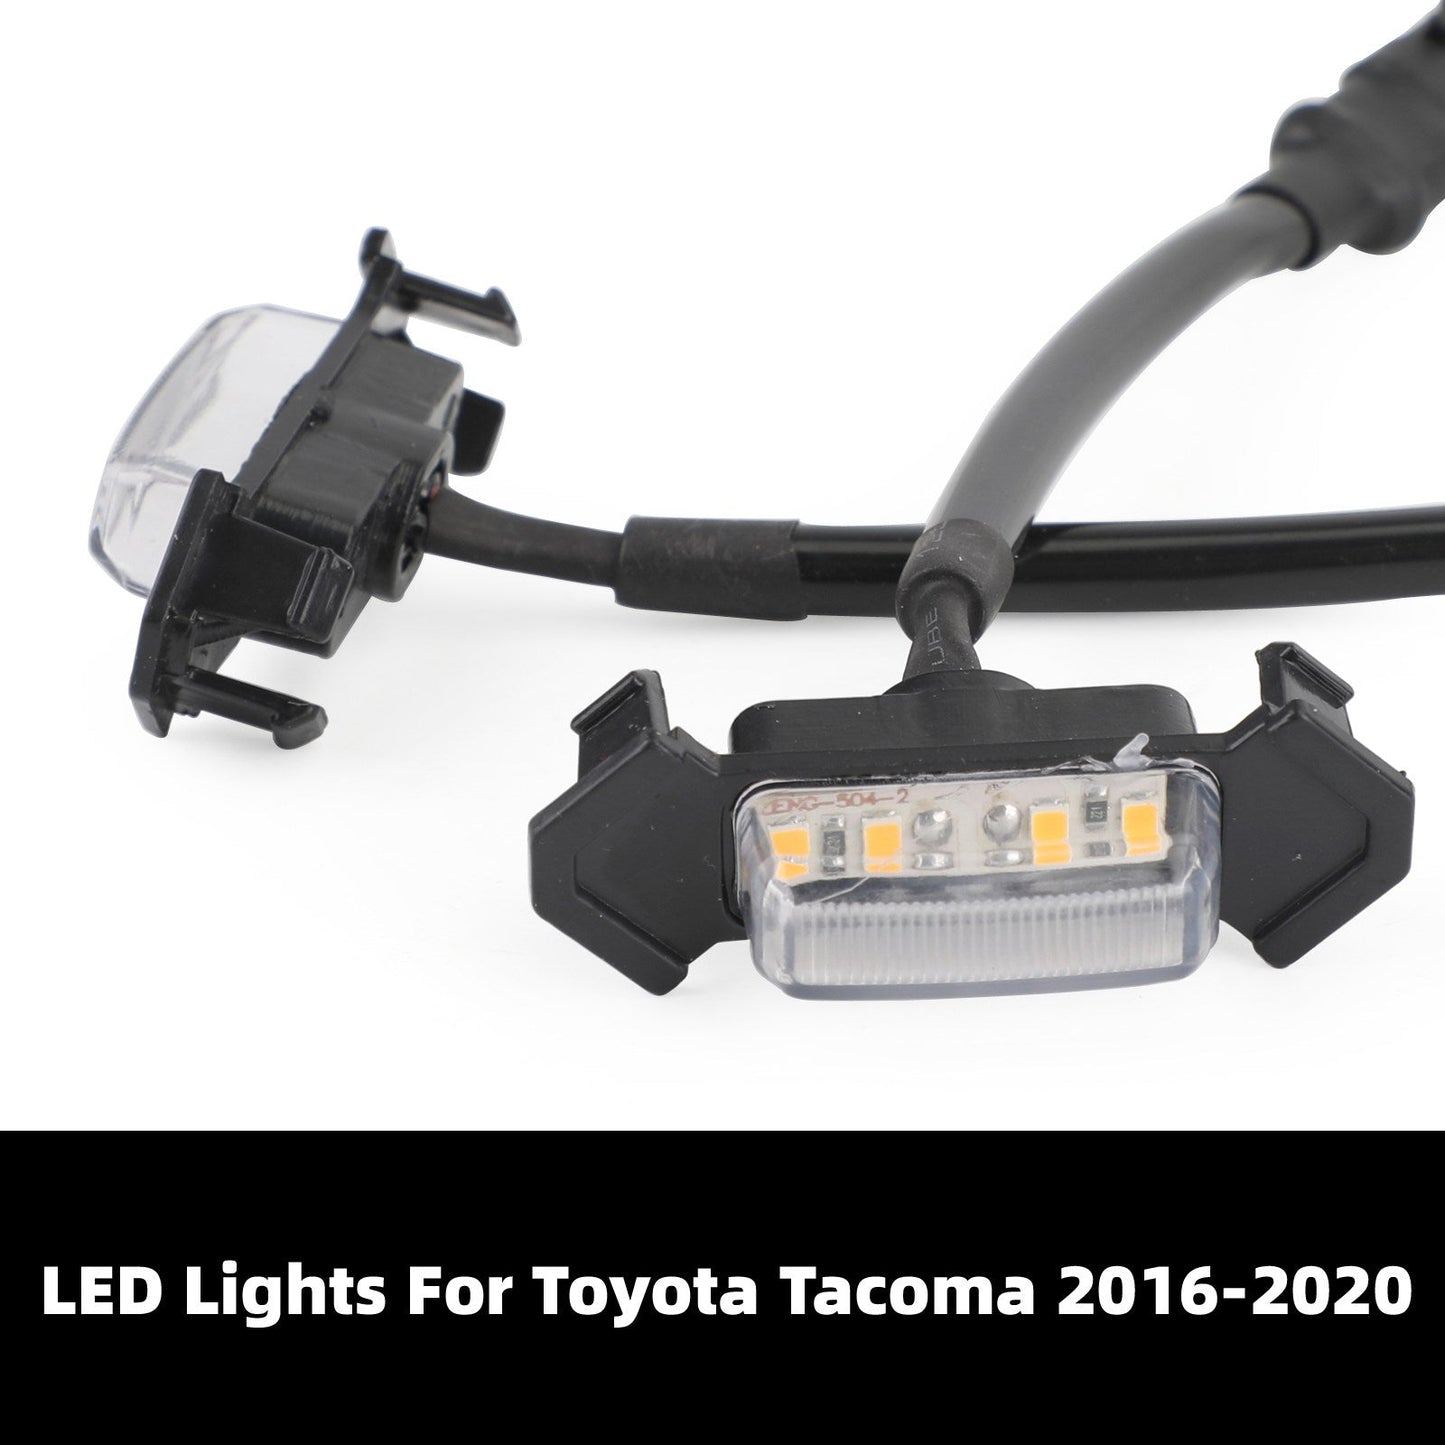 4 pièces/ensemble lumières LED réglage de personnalisation calandre de pare-chocs avant Tacoma 2016-2020 PT228-35170 clair générique